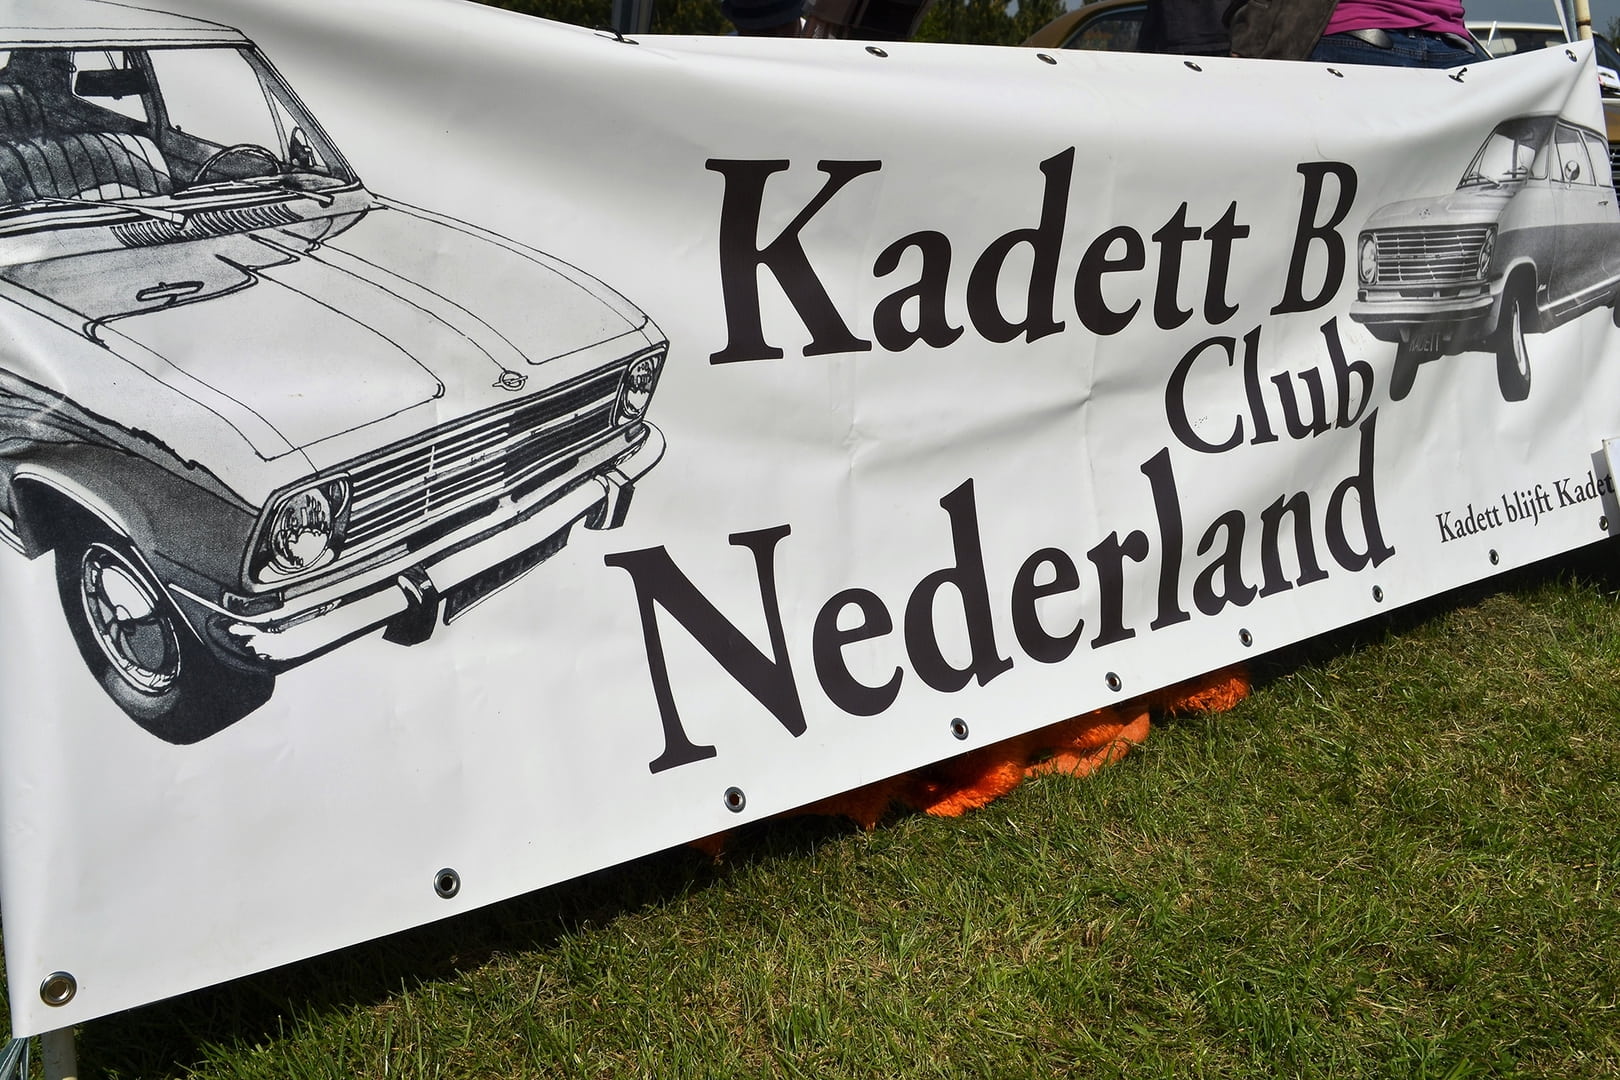 <<< Holland Kadett-B Club foto_001 >>>